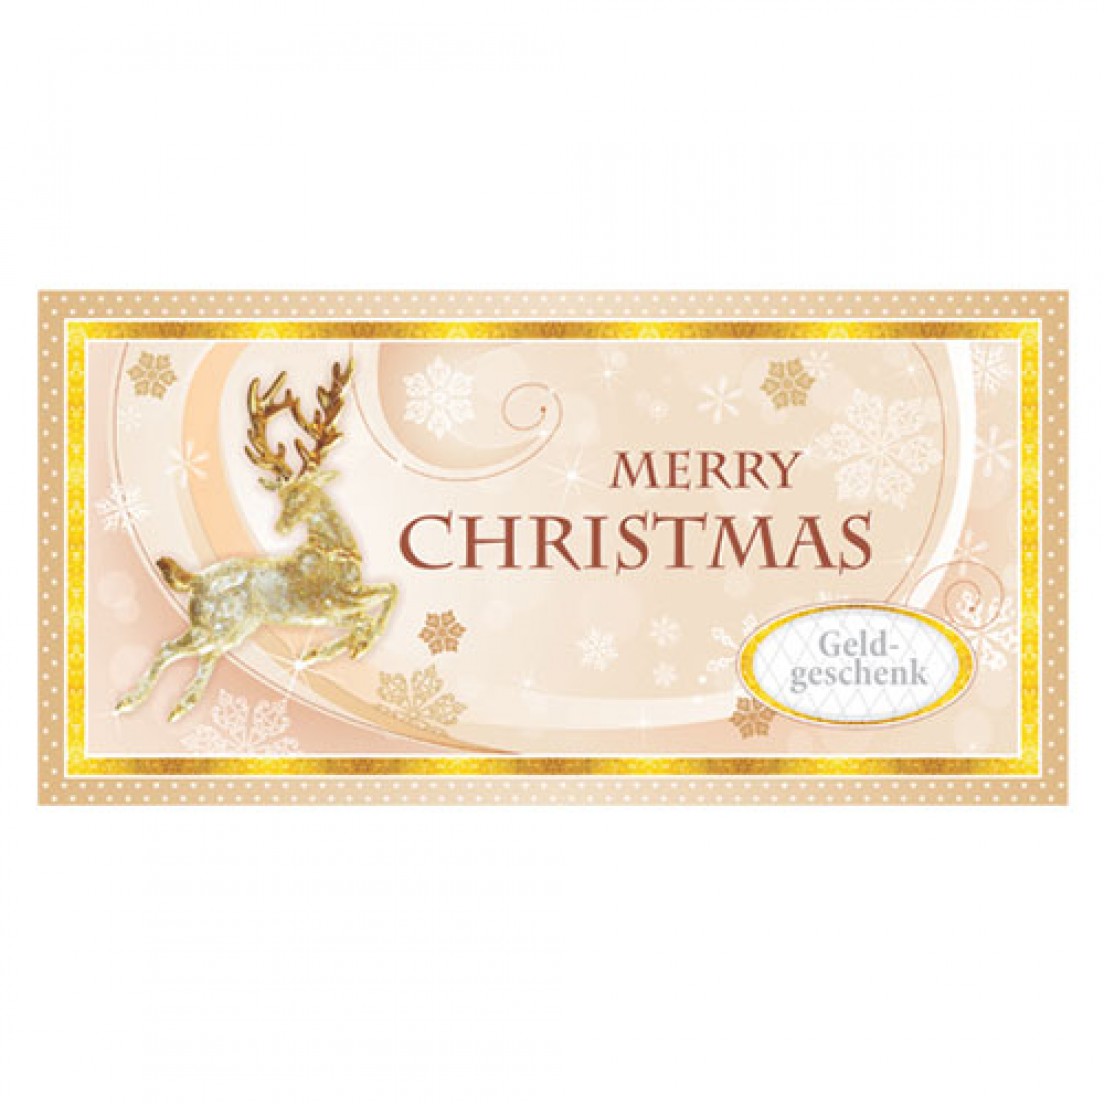 Geldgeschenk Weihnachten Umschlag kleiner Geldgeschenkumschlag Weihnachtsmotiv